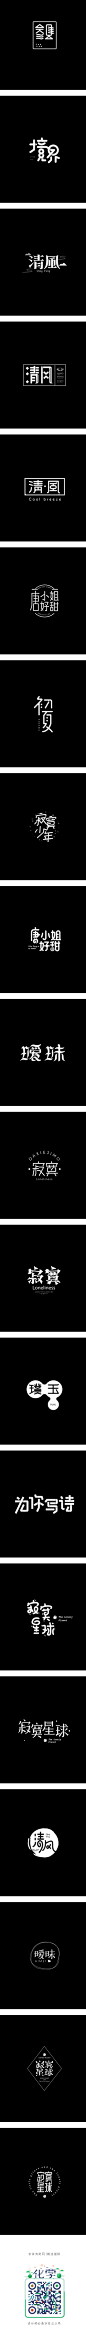 结绳集/字体设计整理-字体传奇网-中国首个字体品牌设计师交流网